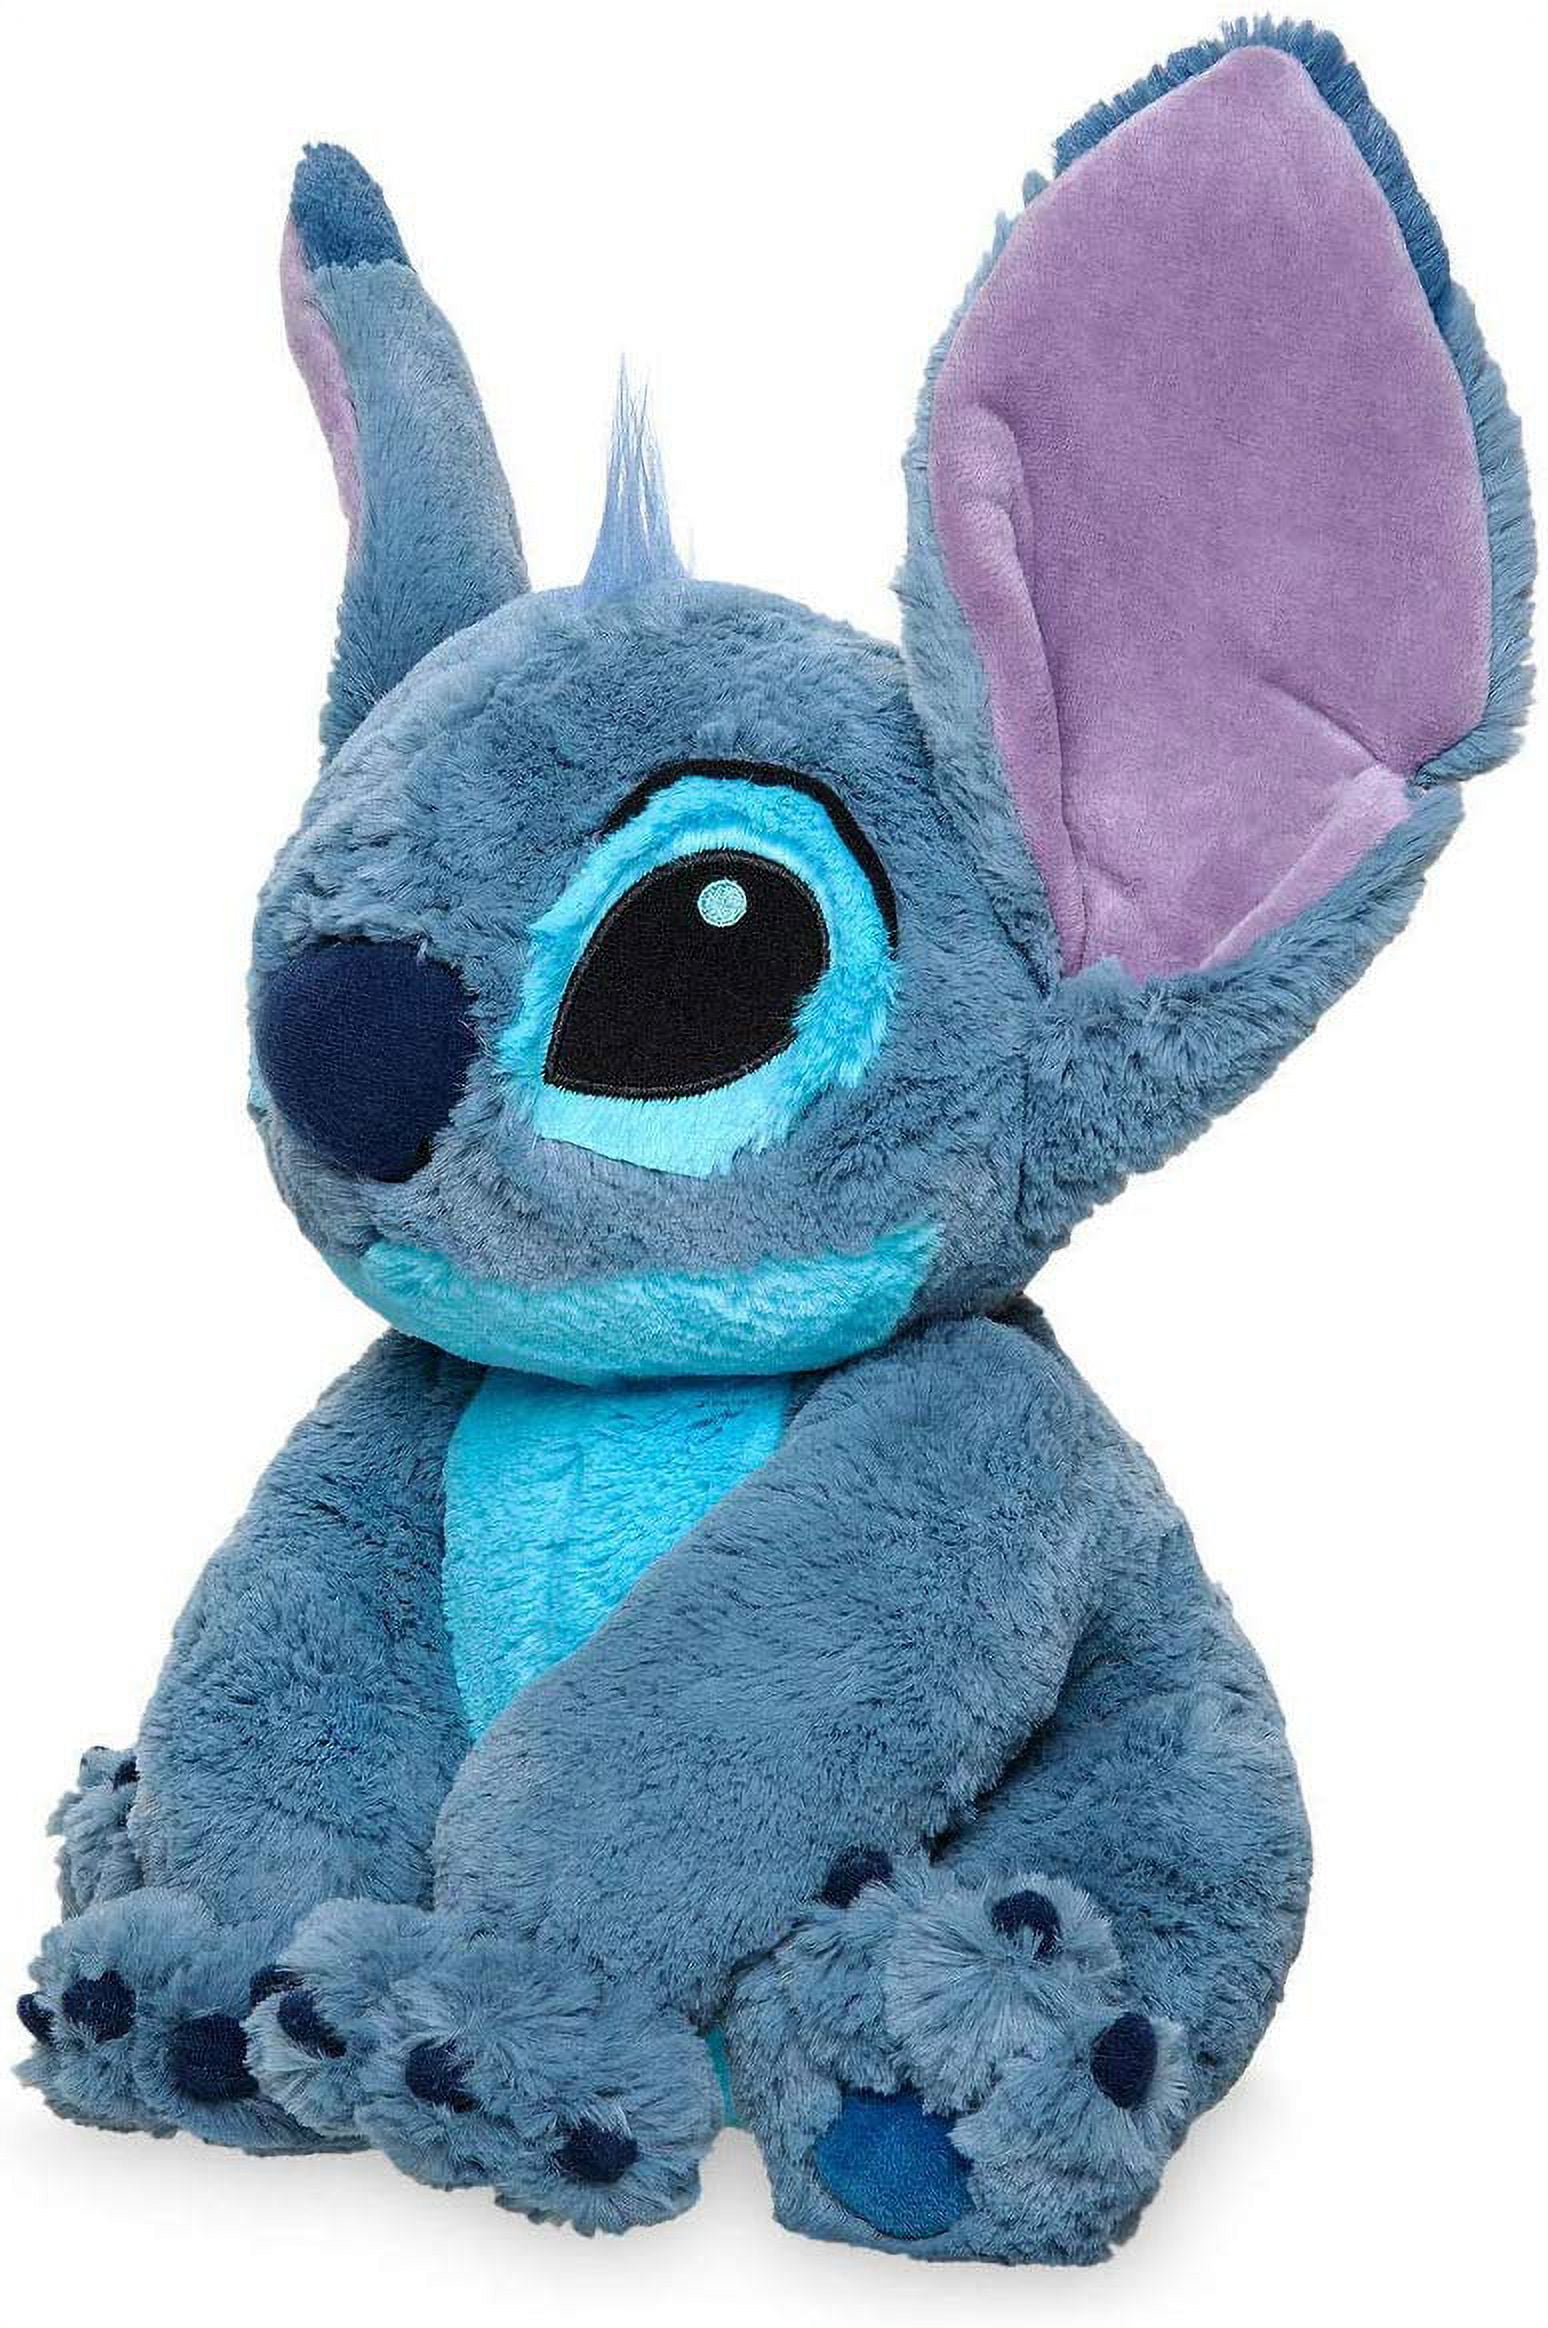 Lilo-Stitch TV Character Plush Stuffed Toys 9 Stitch Soft Doll Original -  Price history & Review, AliExpress Seller - Shawsons Store